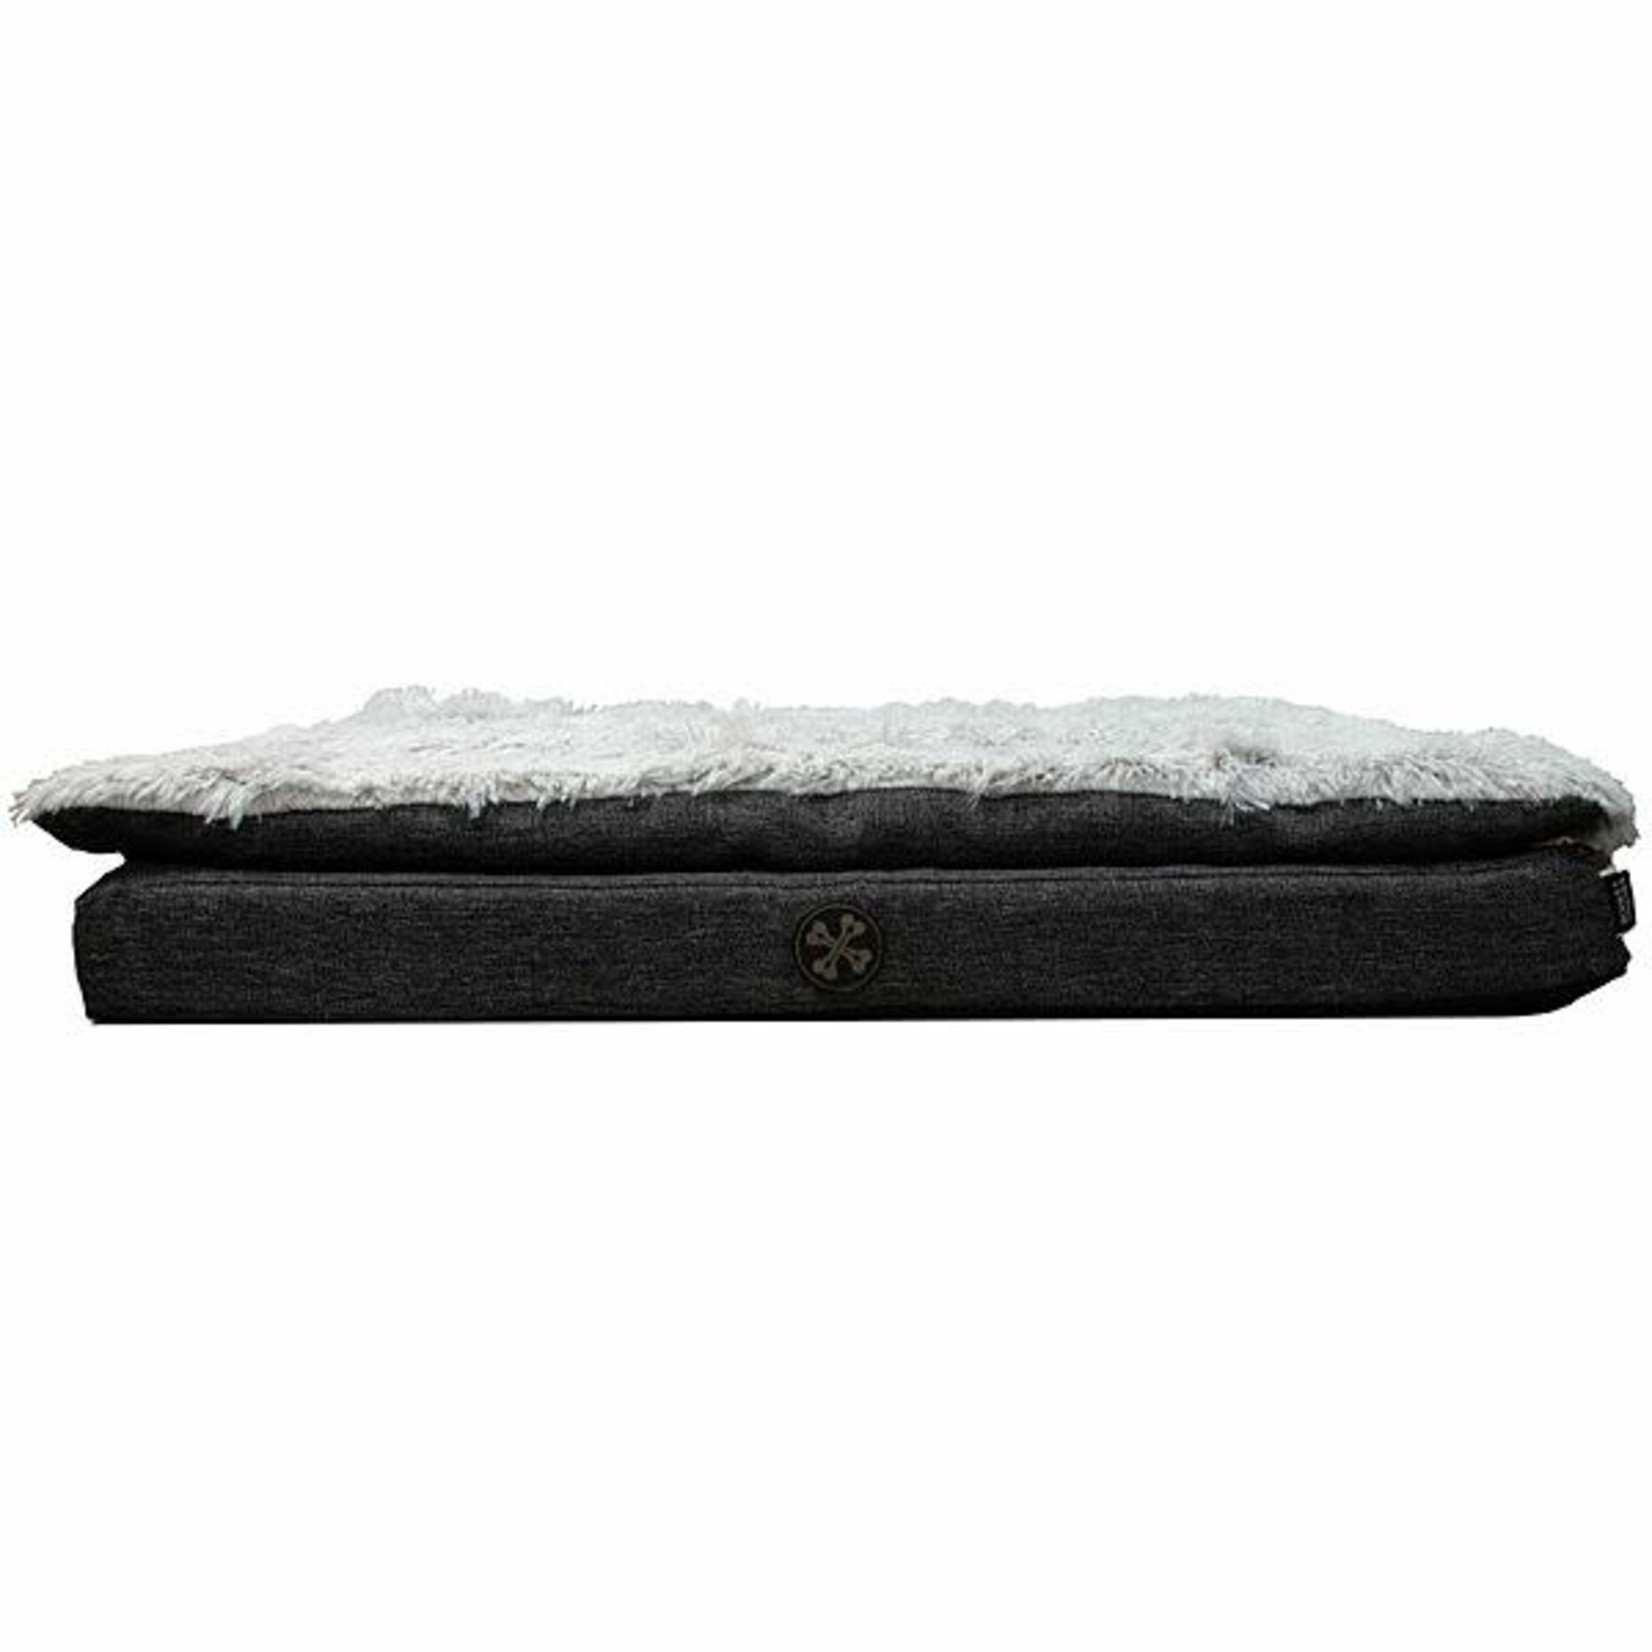 Cuddle Soft Orthopedic Foam Bed 26x34